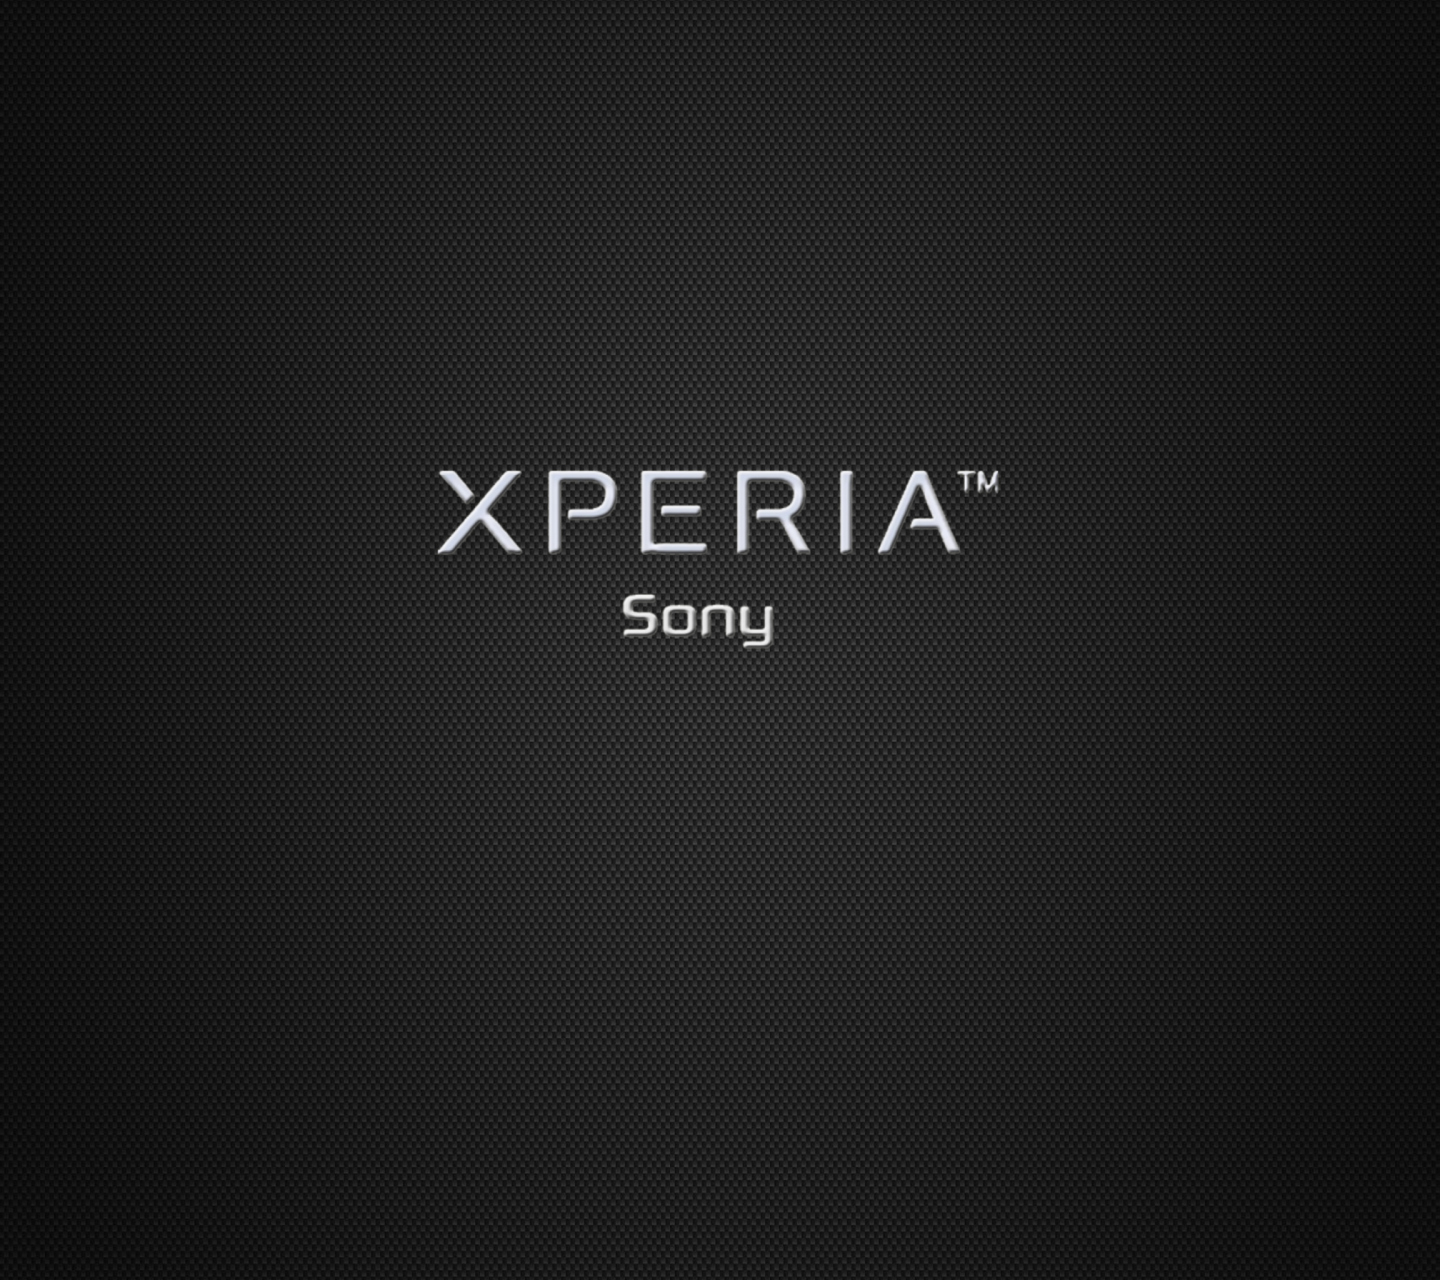 Sfondi Sony Xperia 1440x1280